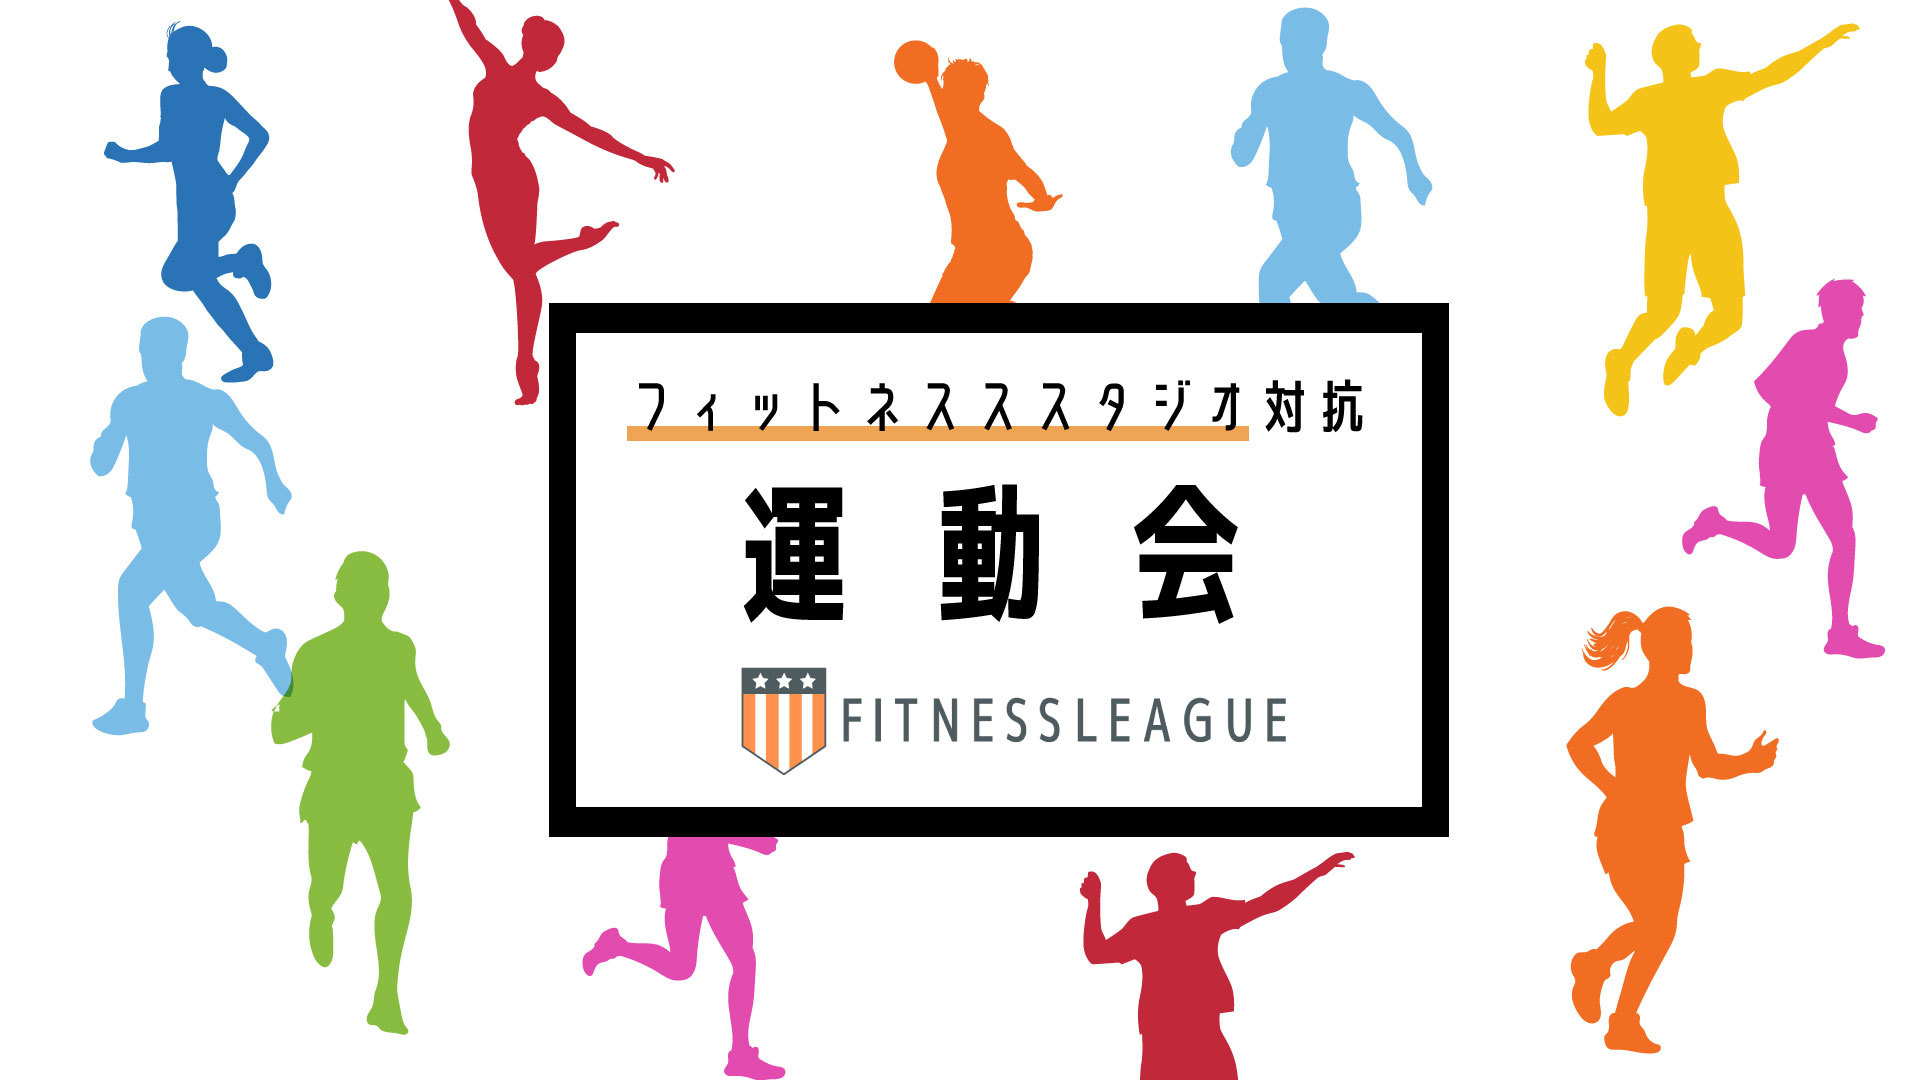 日本初のフィットネススタジオ対抗型の運動会イベント　
5月7日に東京での開催決定、2月15日からエントリー開始